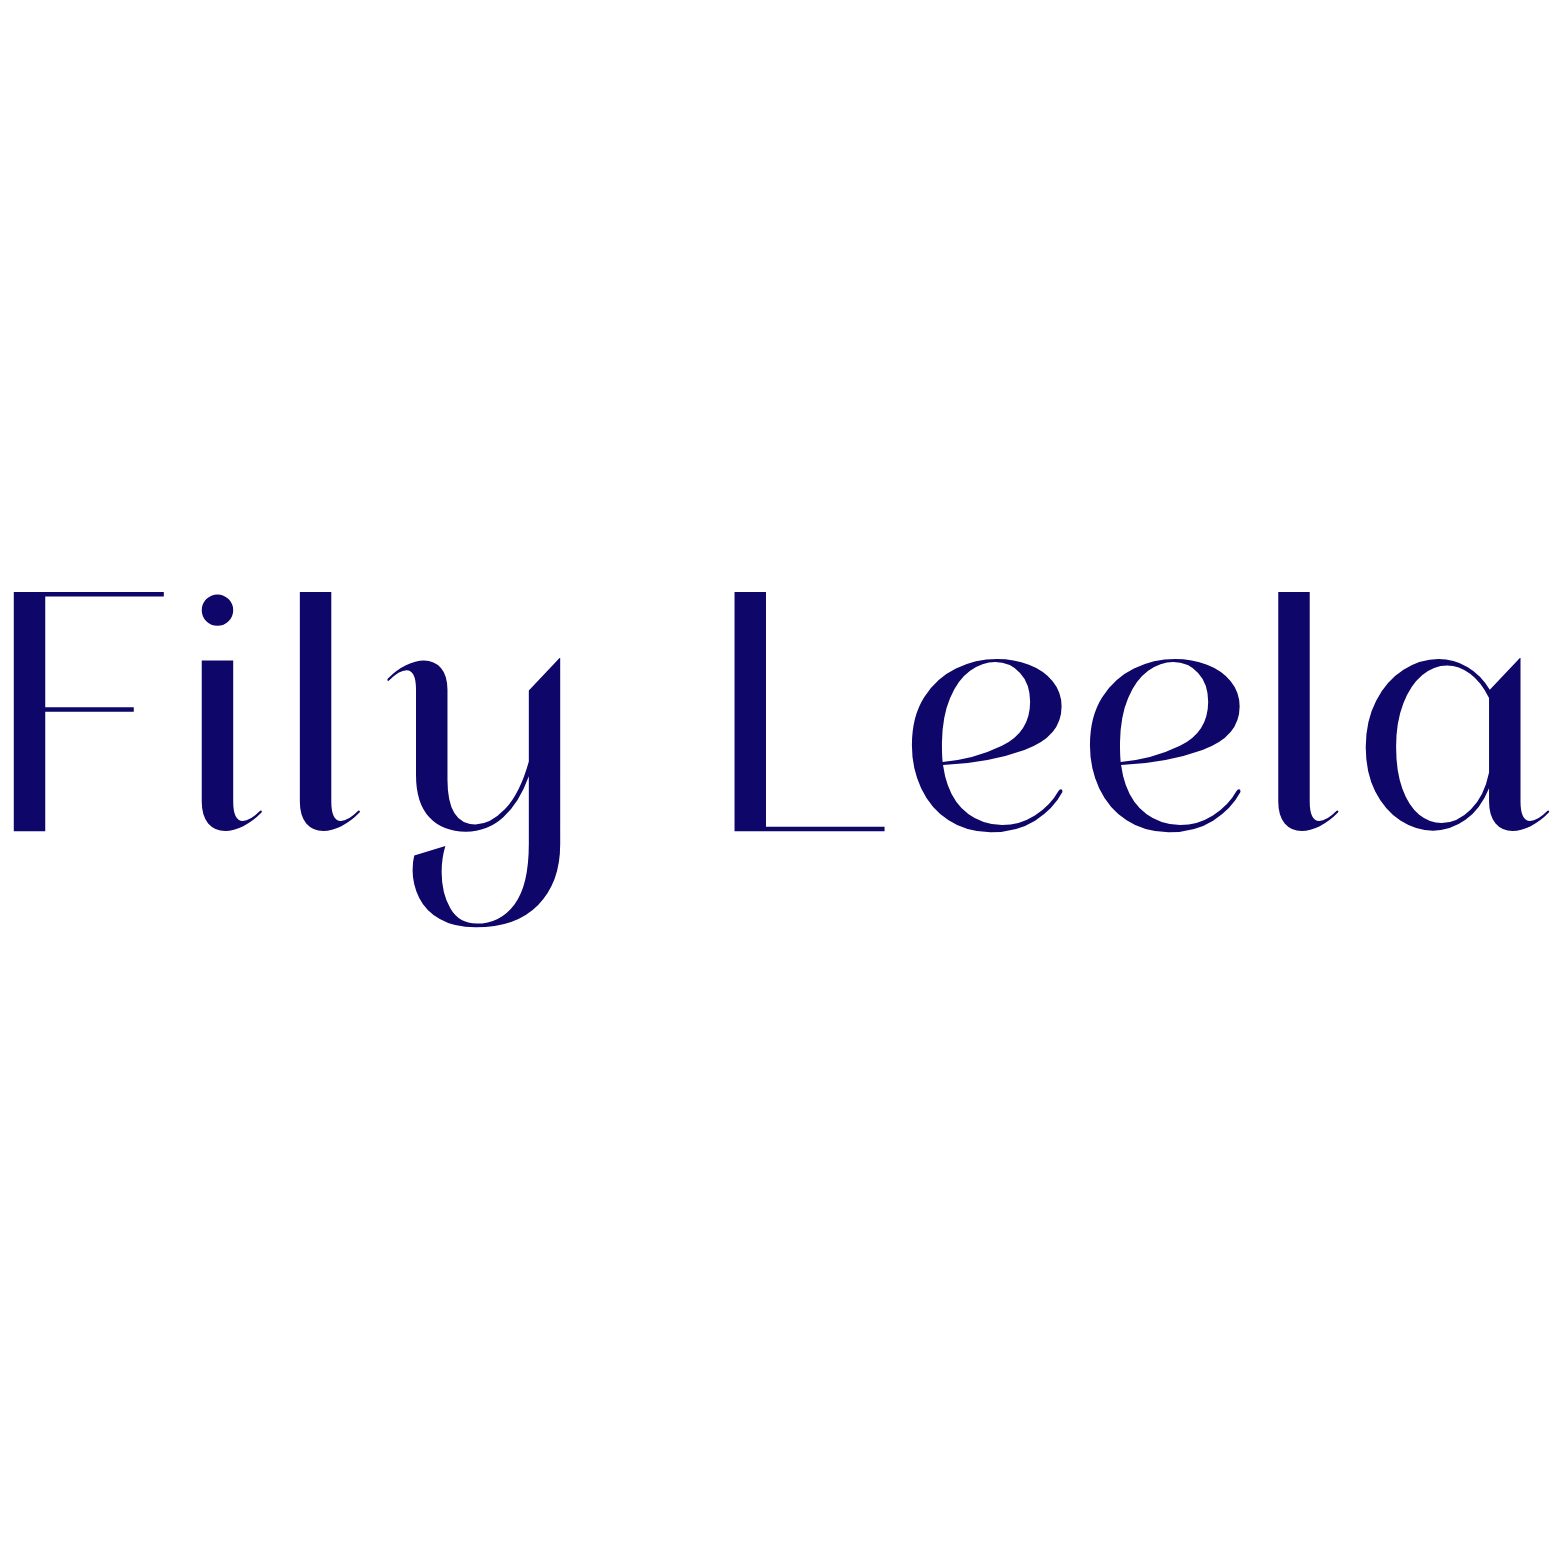 Fily Leela